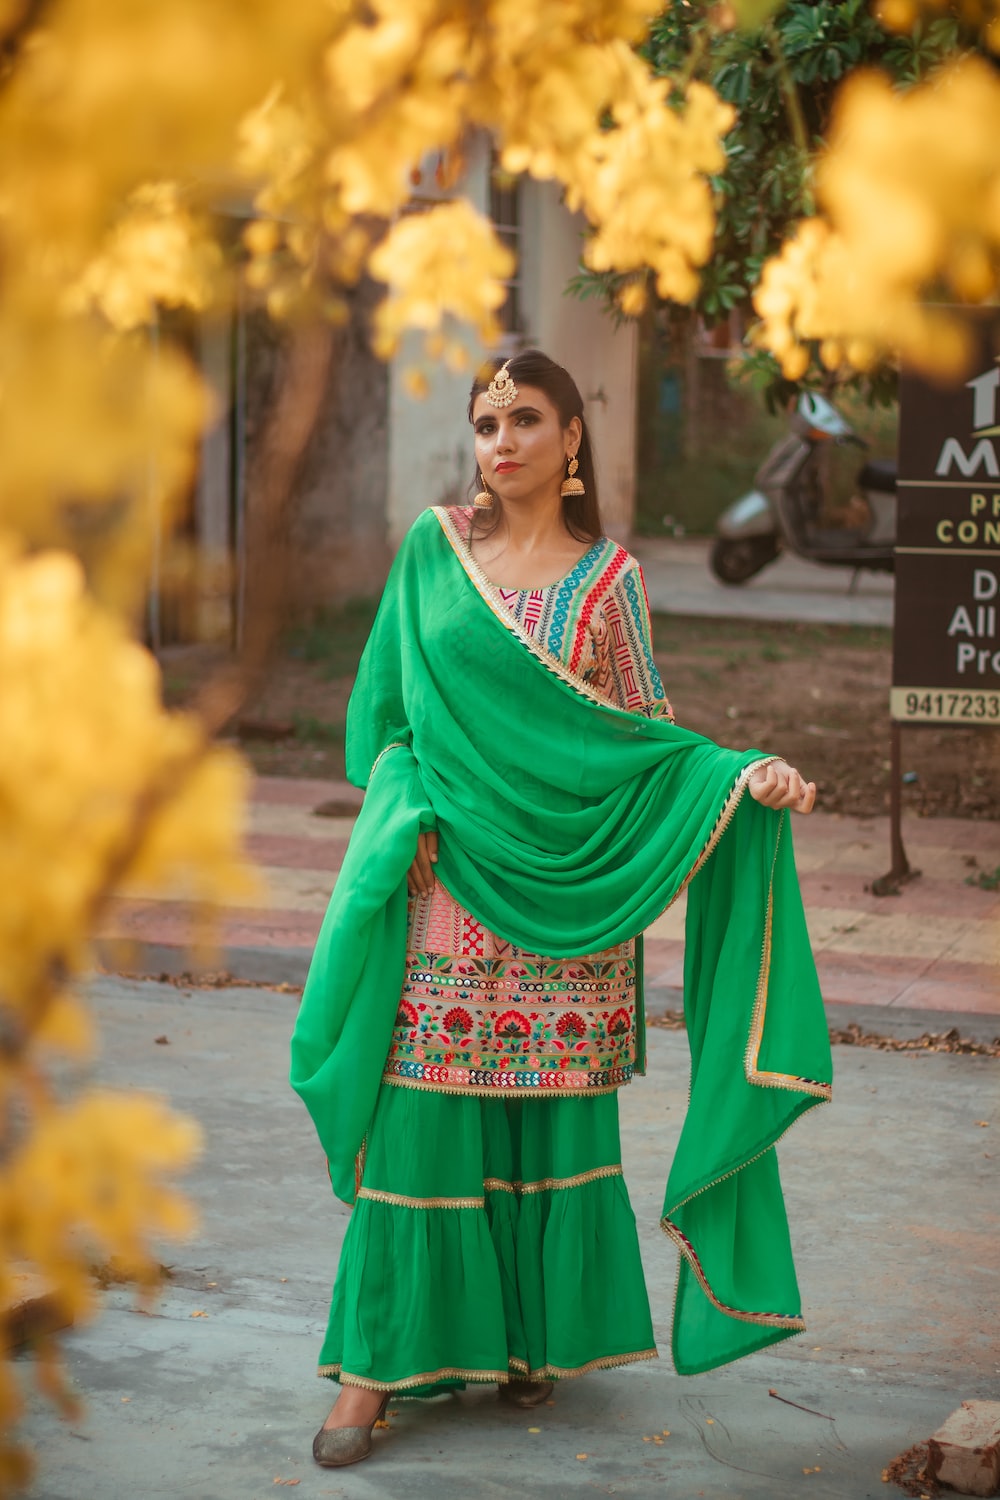 Punjabi model in punjabi suit HD wallpapers | Pxfuel